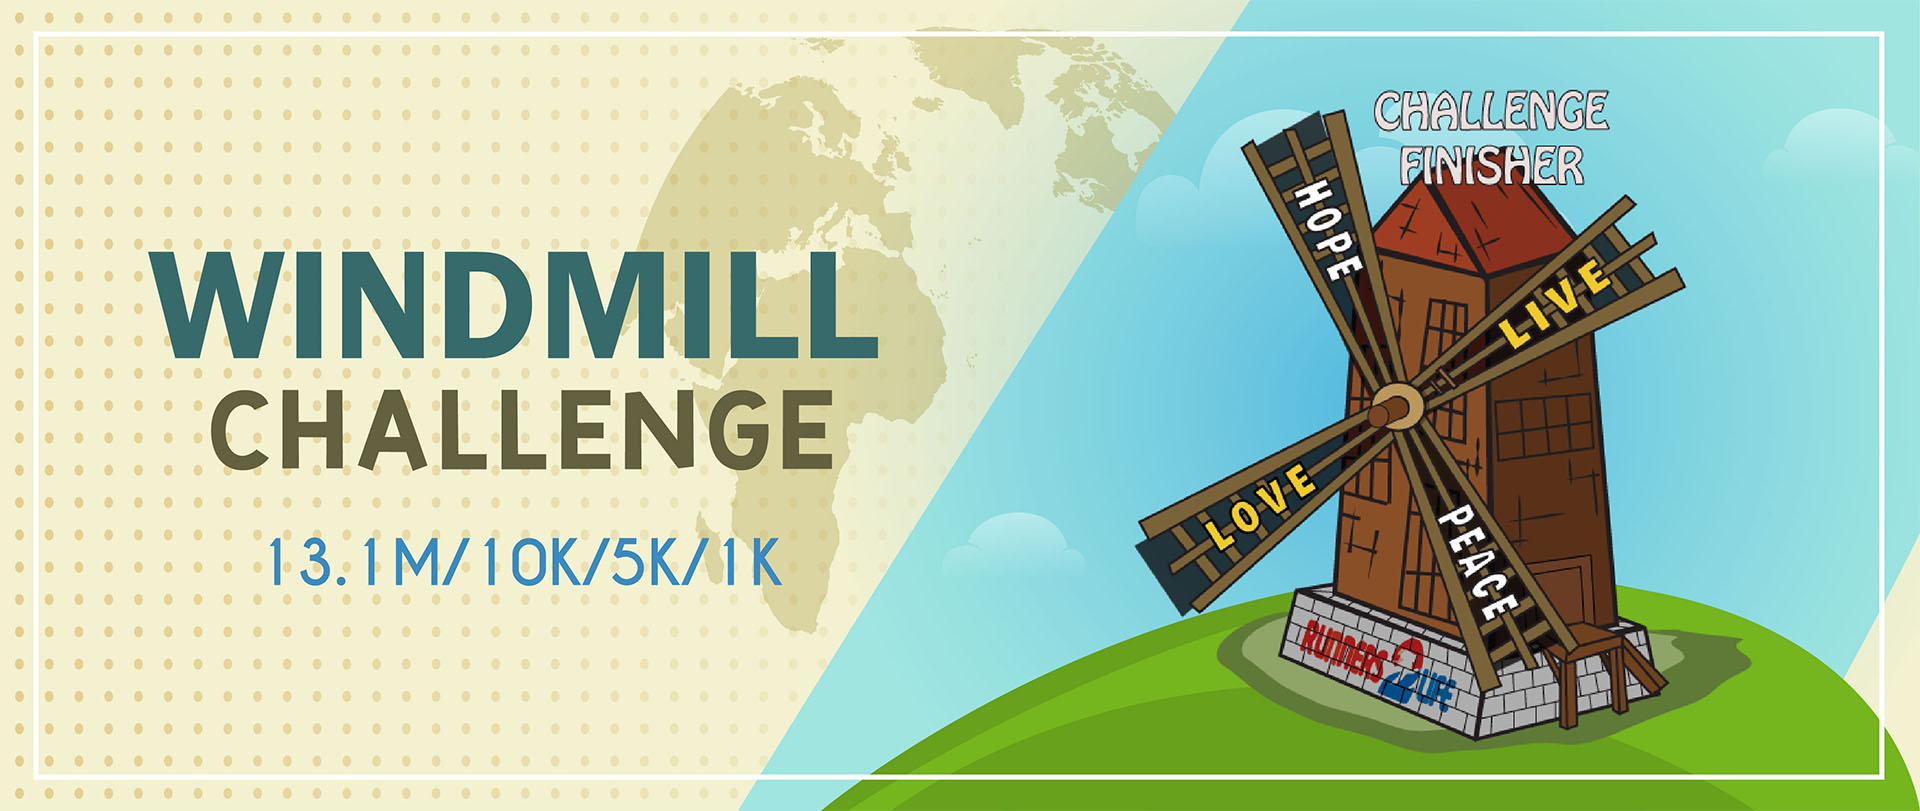 Windmill Challenge (Earn Free The Windmill Medal ).13.1M/10k/5k/1k